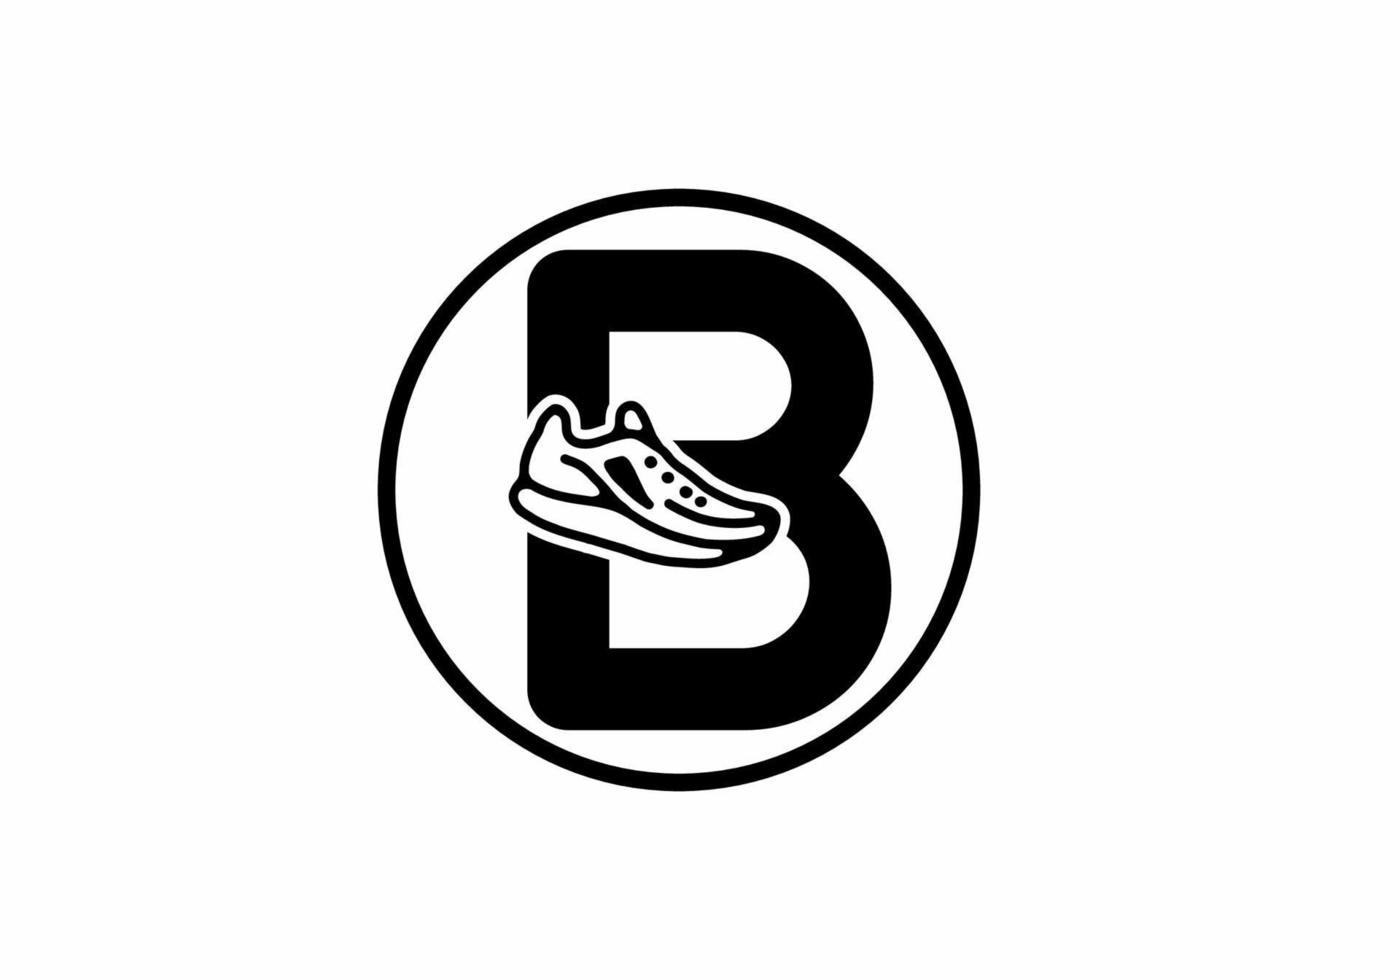 zwarte b beginletter met schoenen in cirkel vector